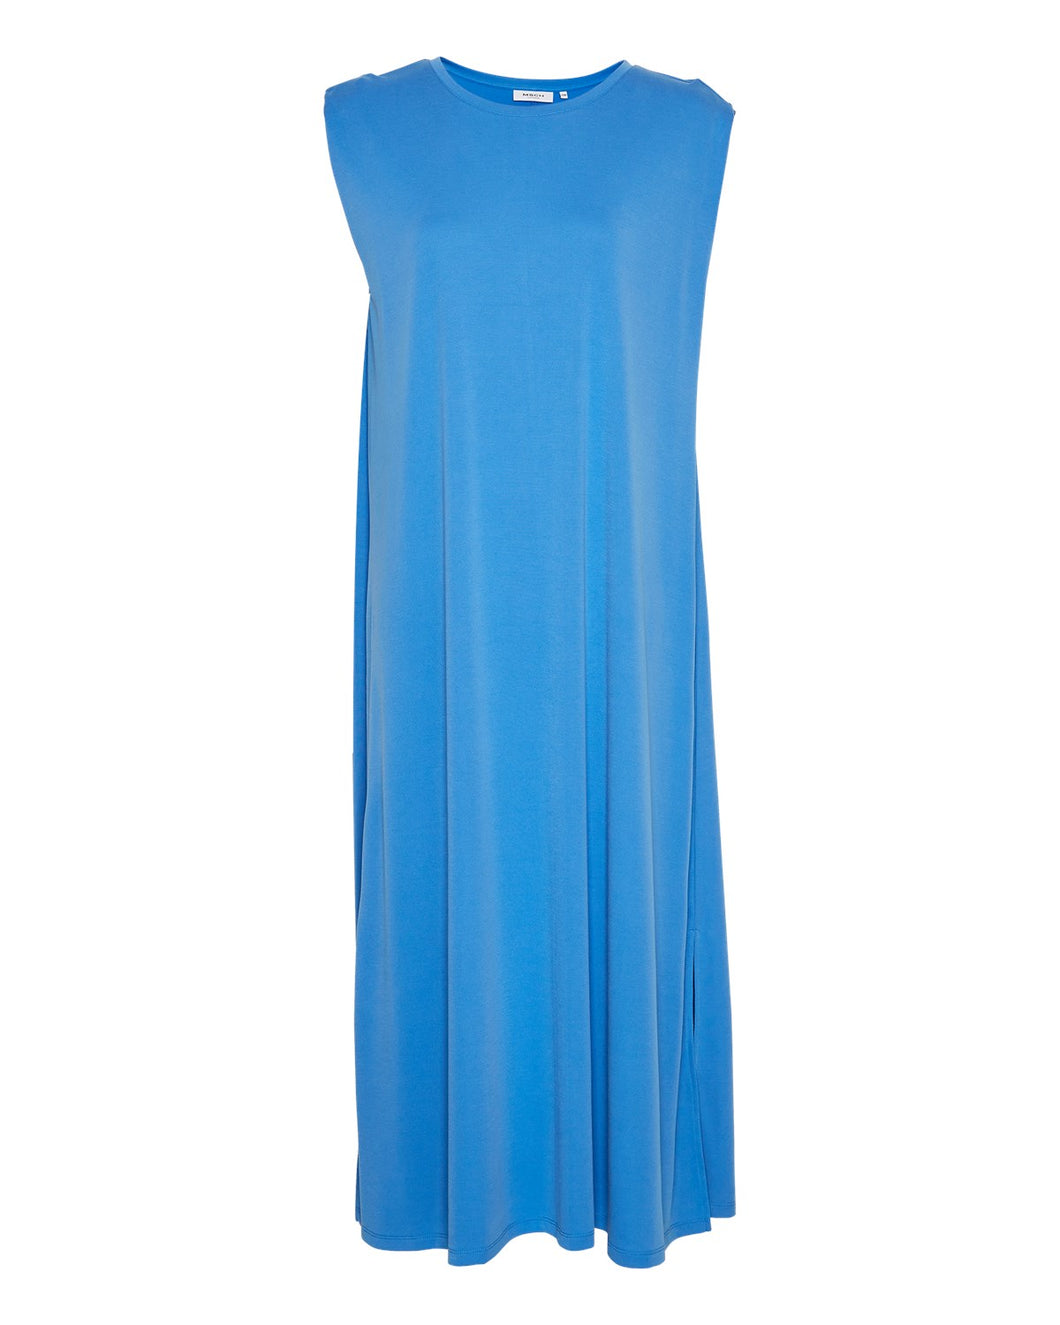 MSCHBirdia Lynette SL Dress, palace blue